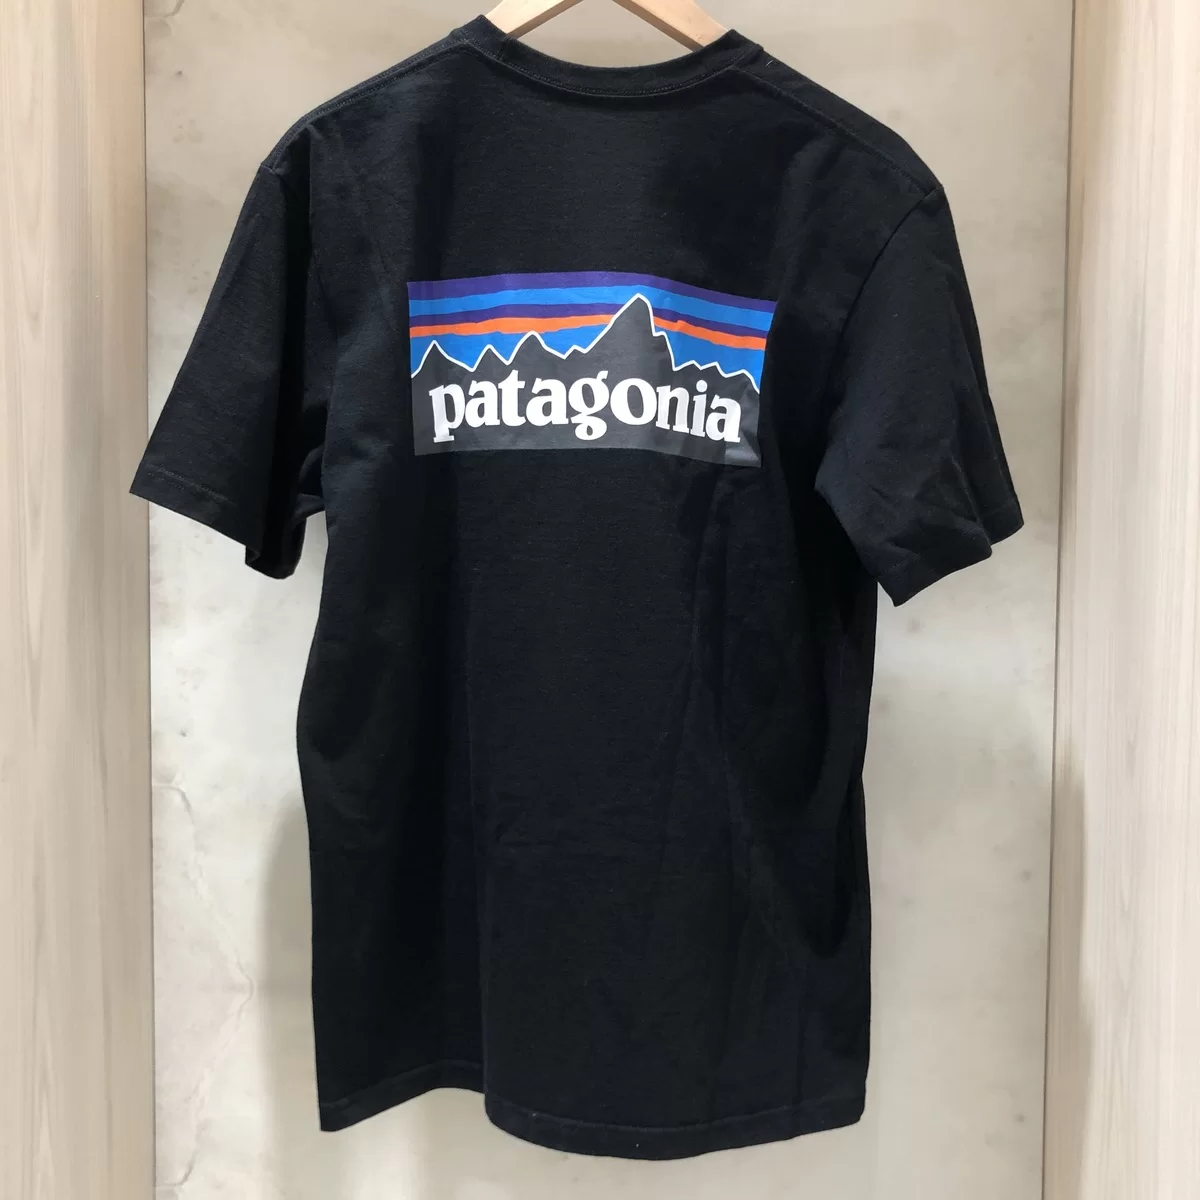 パタゴニアのブラック 38504 P-6ロゴ・レスポンシビリティー Tシャツの買取実績です。